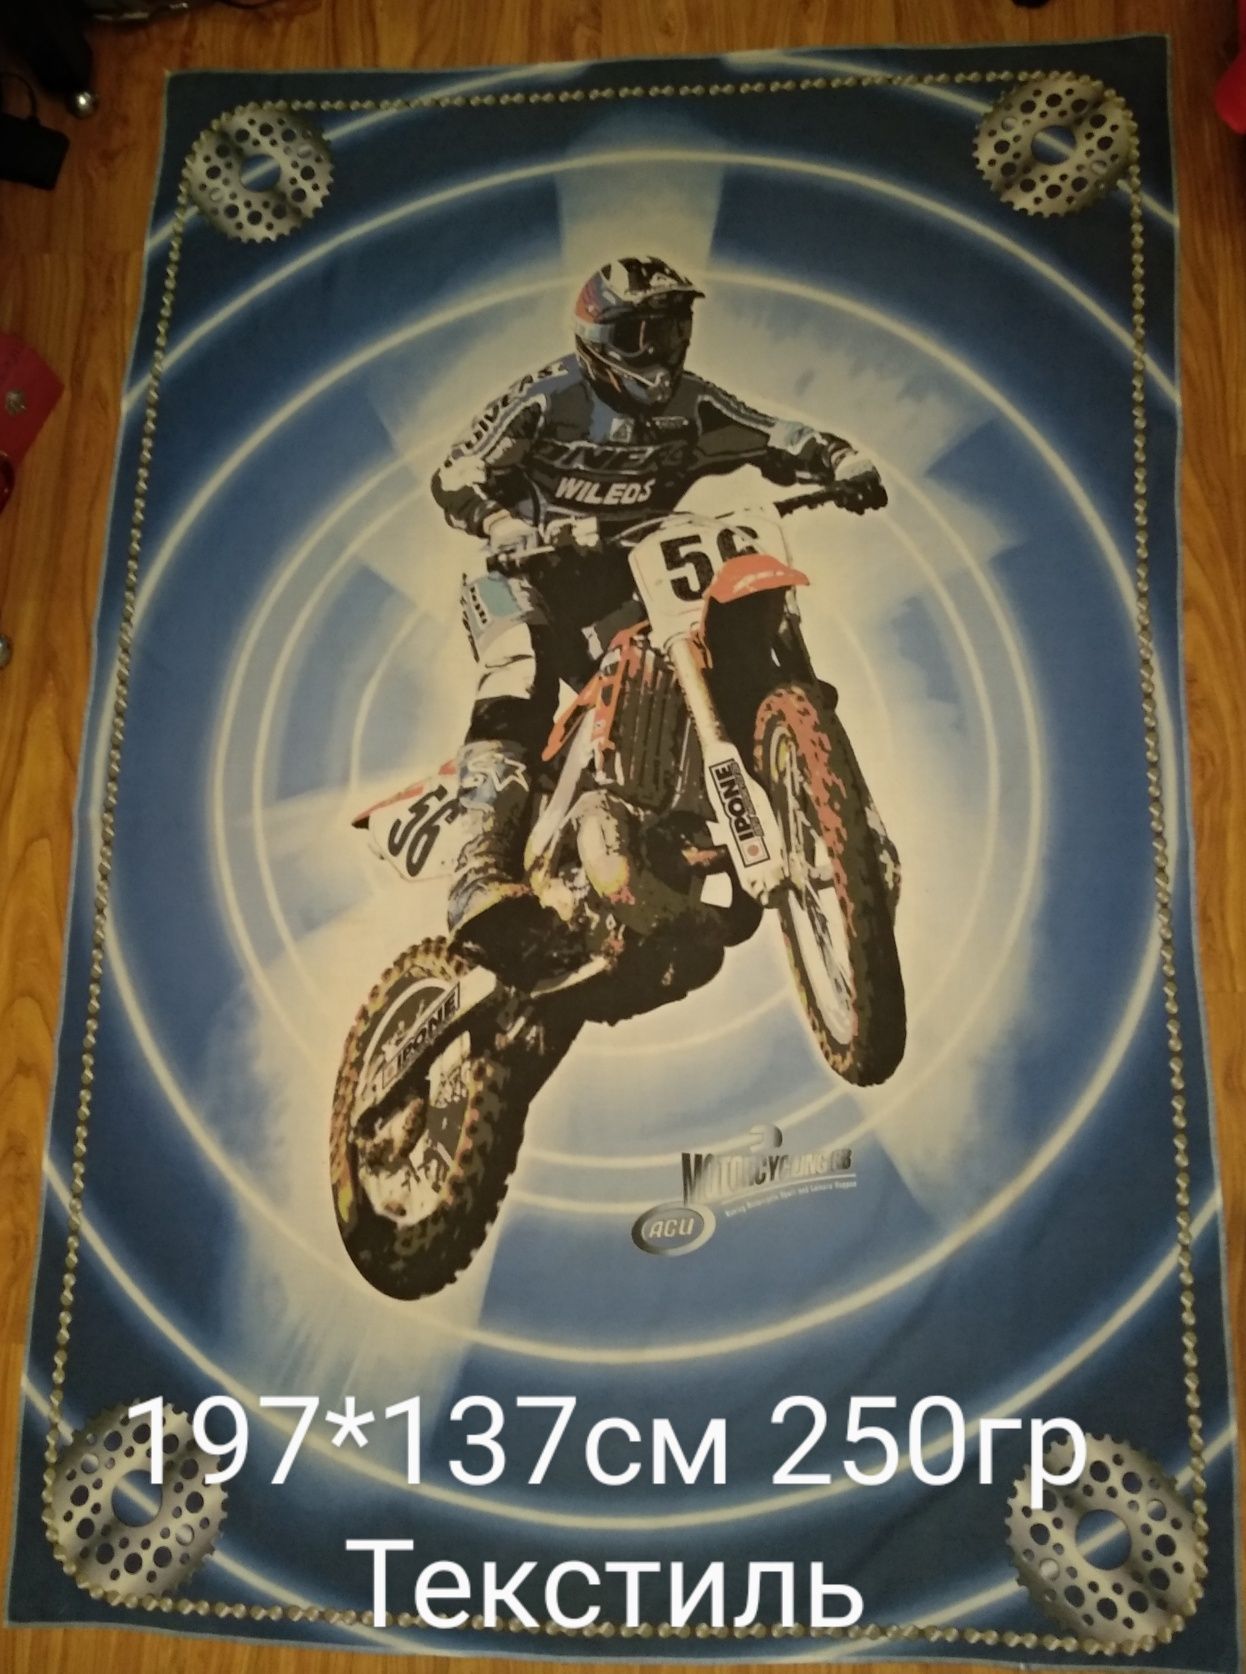 Постер. Плакат. Текстиль.Мотоциклы. Мотокрос.